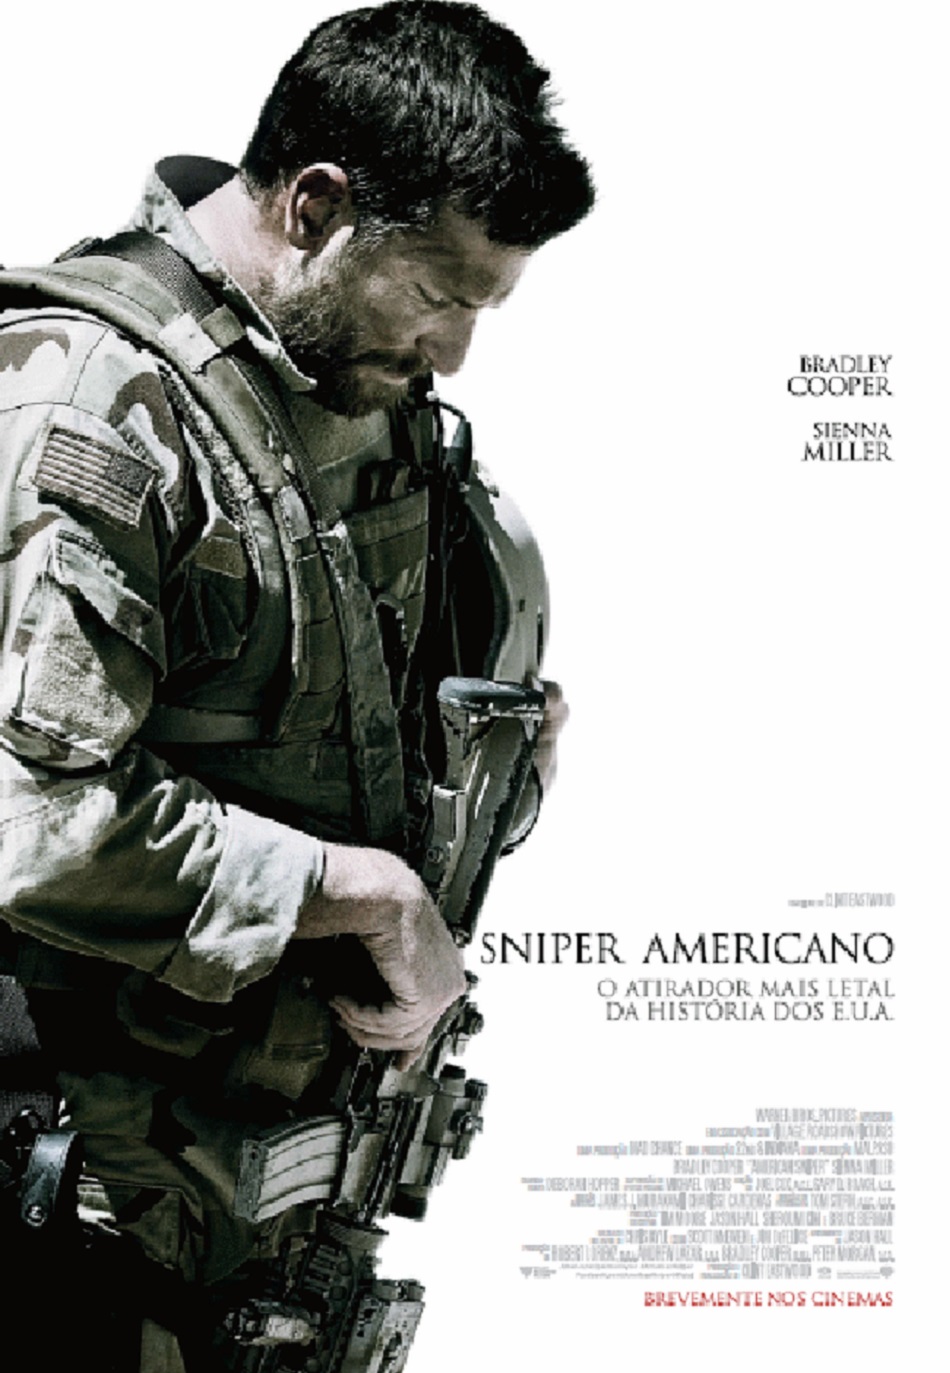 Sniper Americano (Em Portugues do Brasil) by Chris Kyle